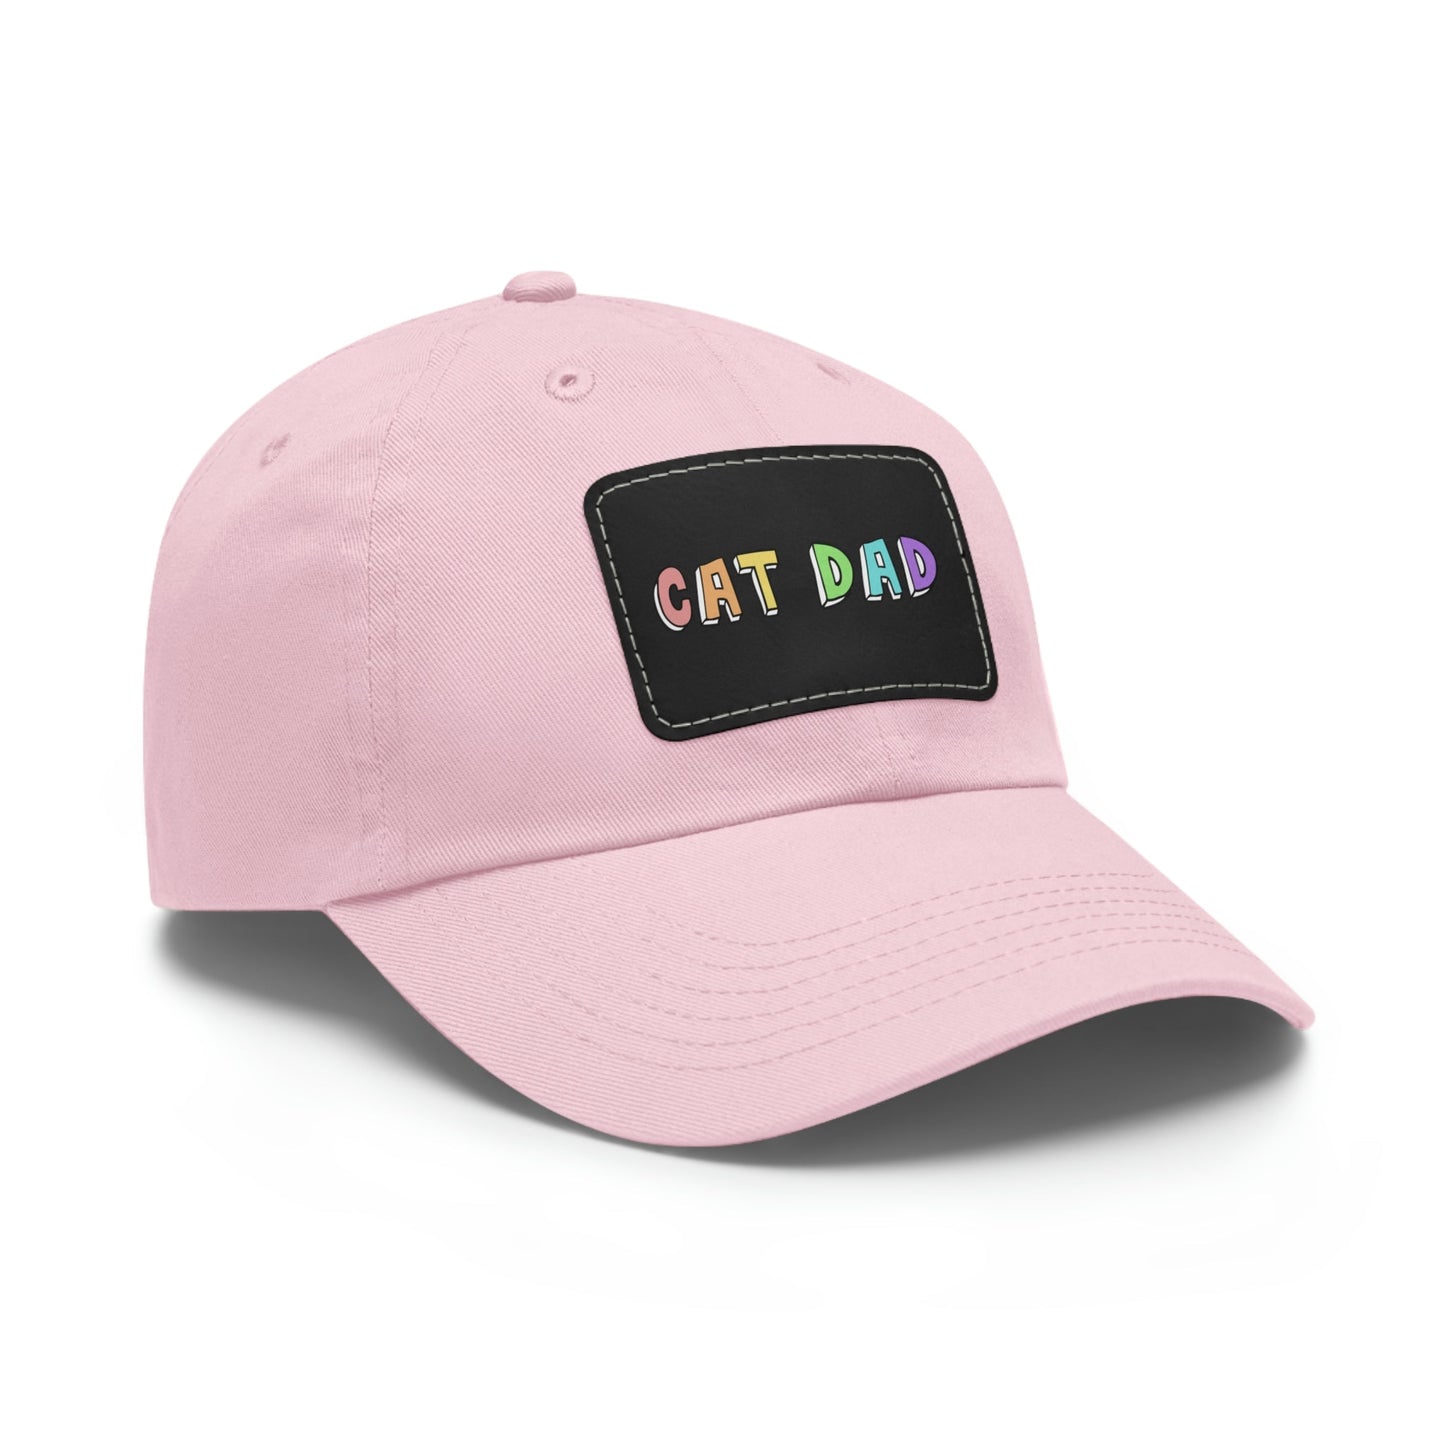 Cat Dad | Dad Hat - Detezi Designs-16196275320563653525